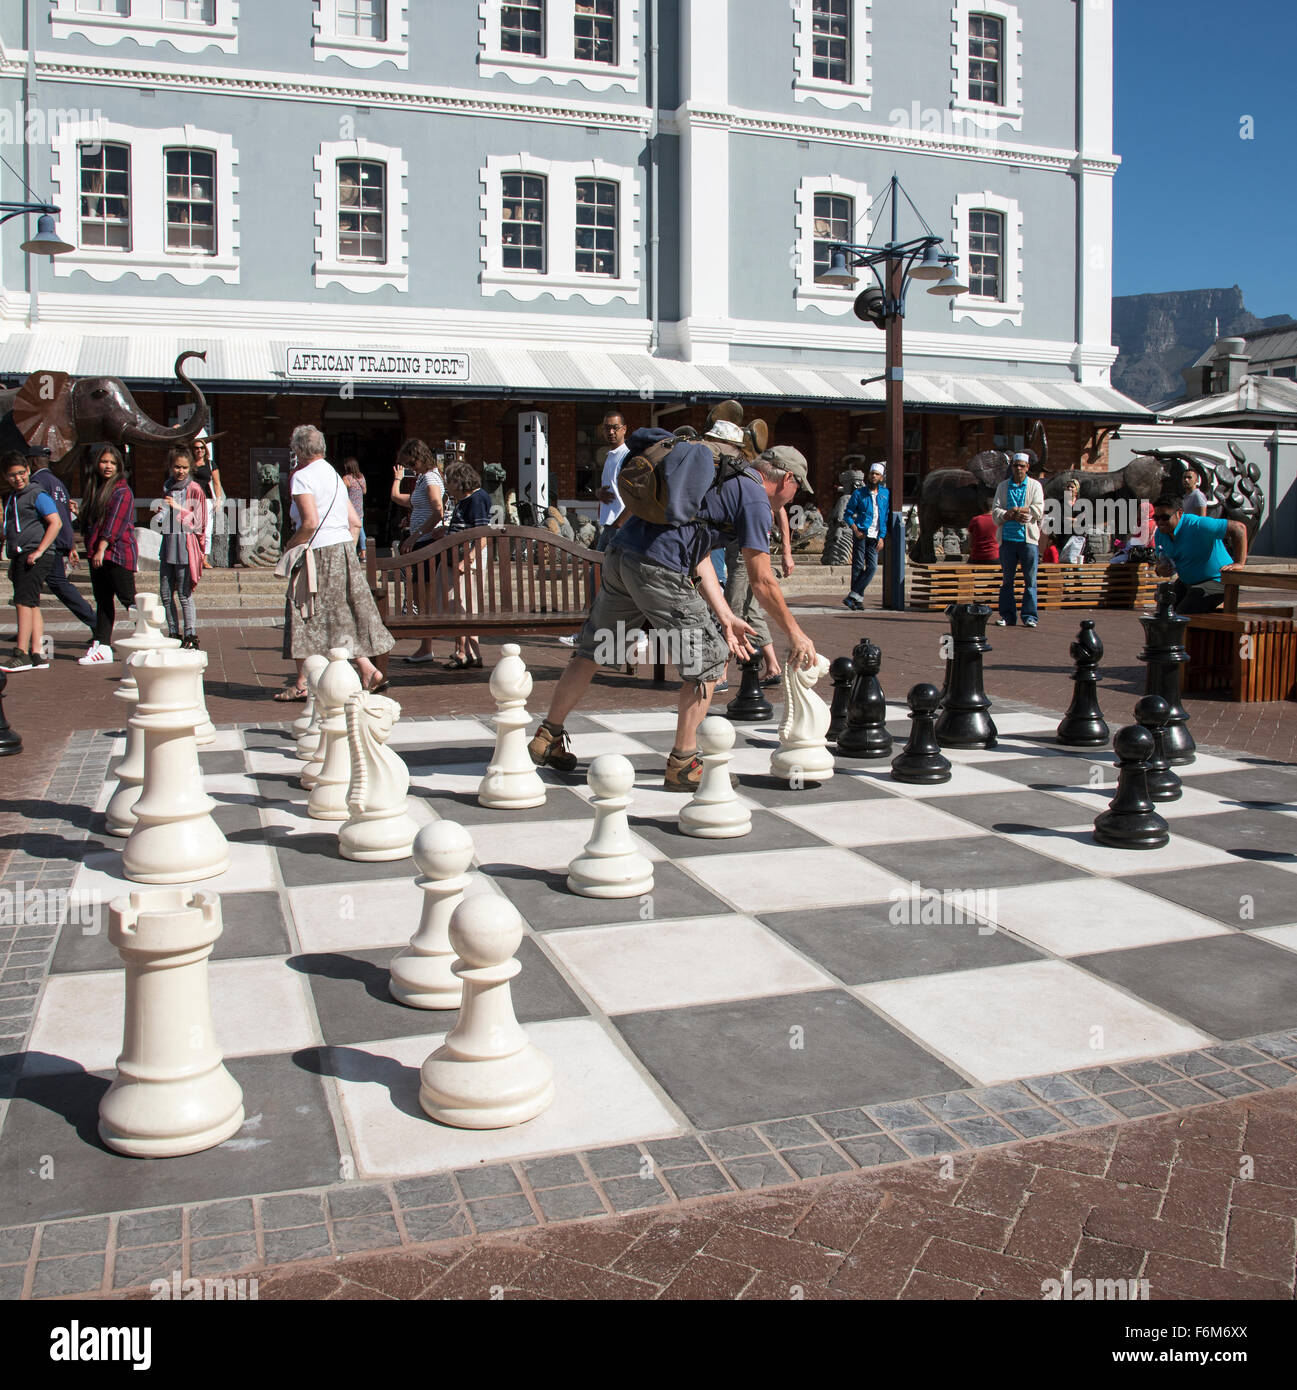 Les joueurs bénéficient d'un jeu d'échecs de la rue sur le bord de l'eau à Cape Town Afrique du Sud Banque D'Images